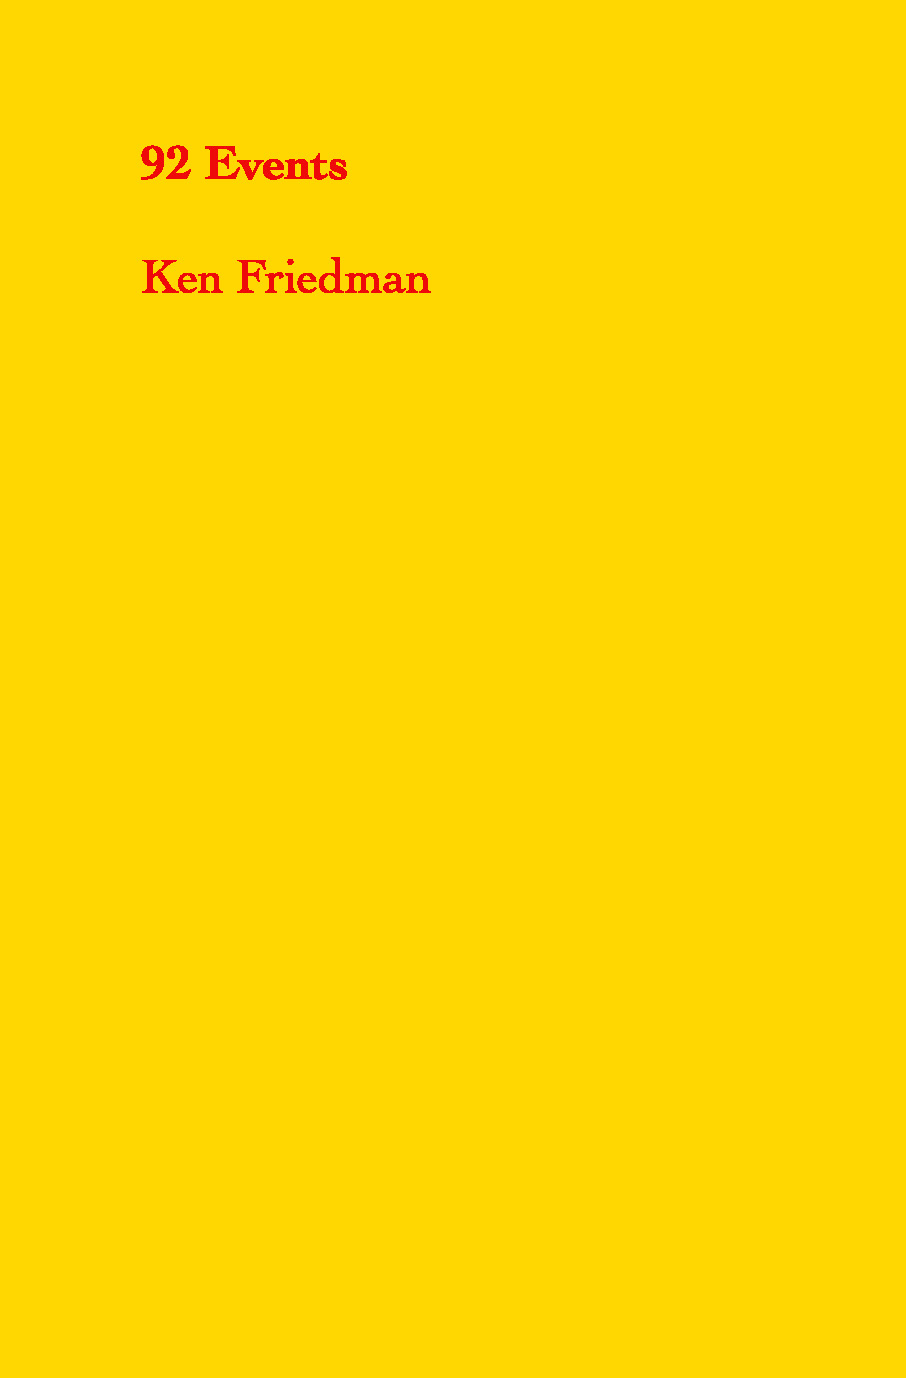 92 Events, Ken Friedman